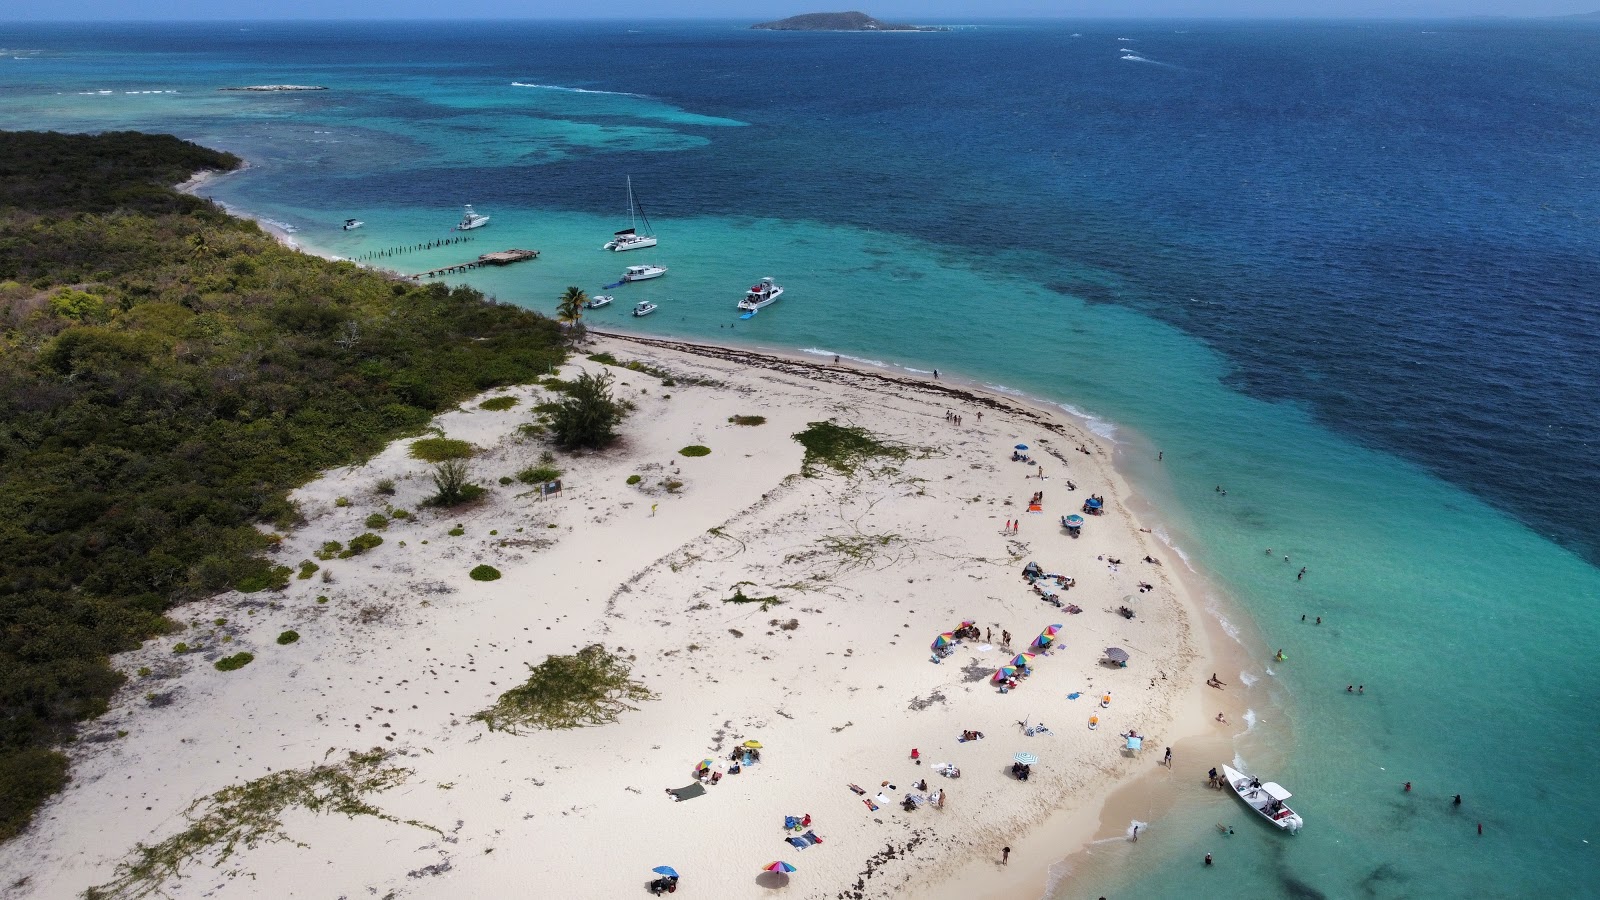 Fotografie cu Icacos beach - locul popular printre cunoscătorii de relaxare